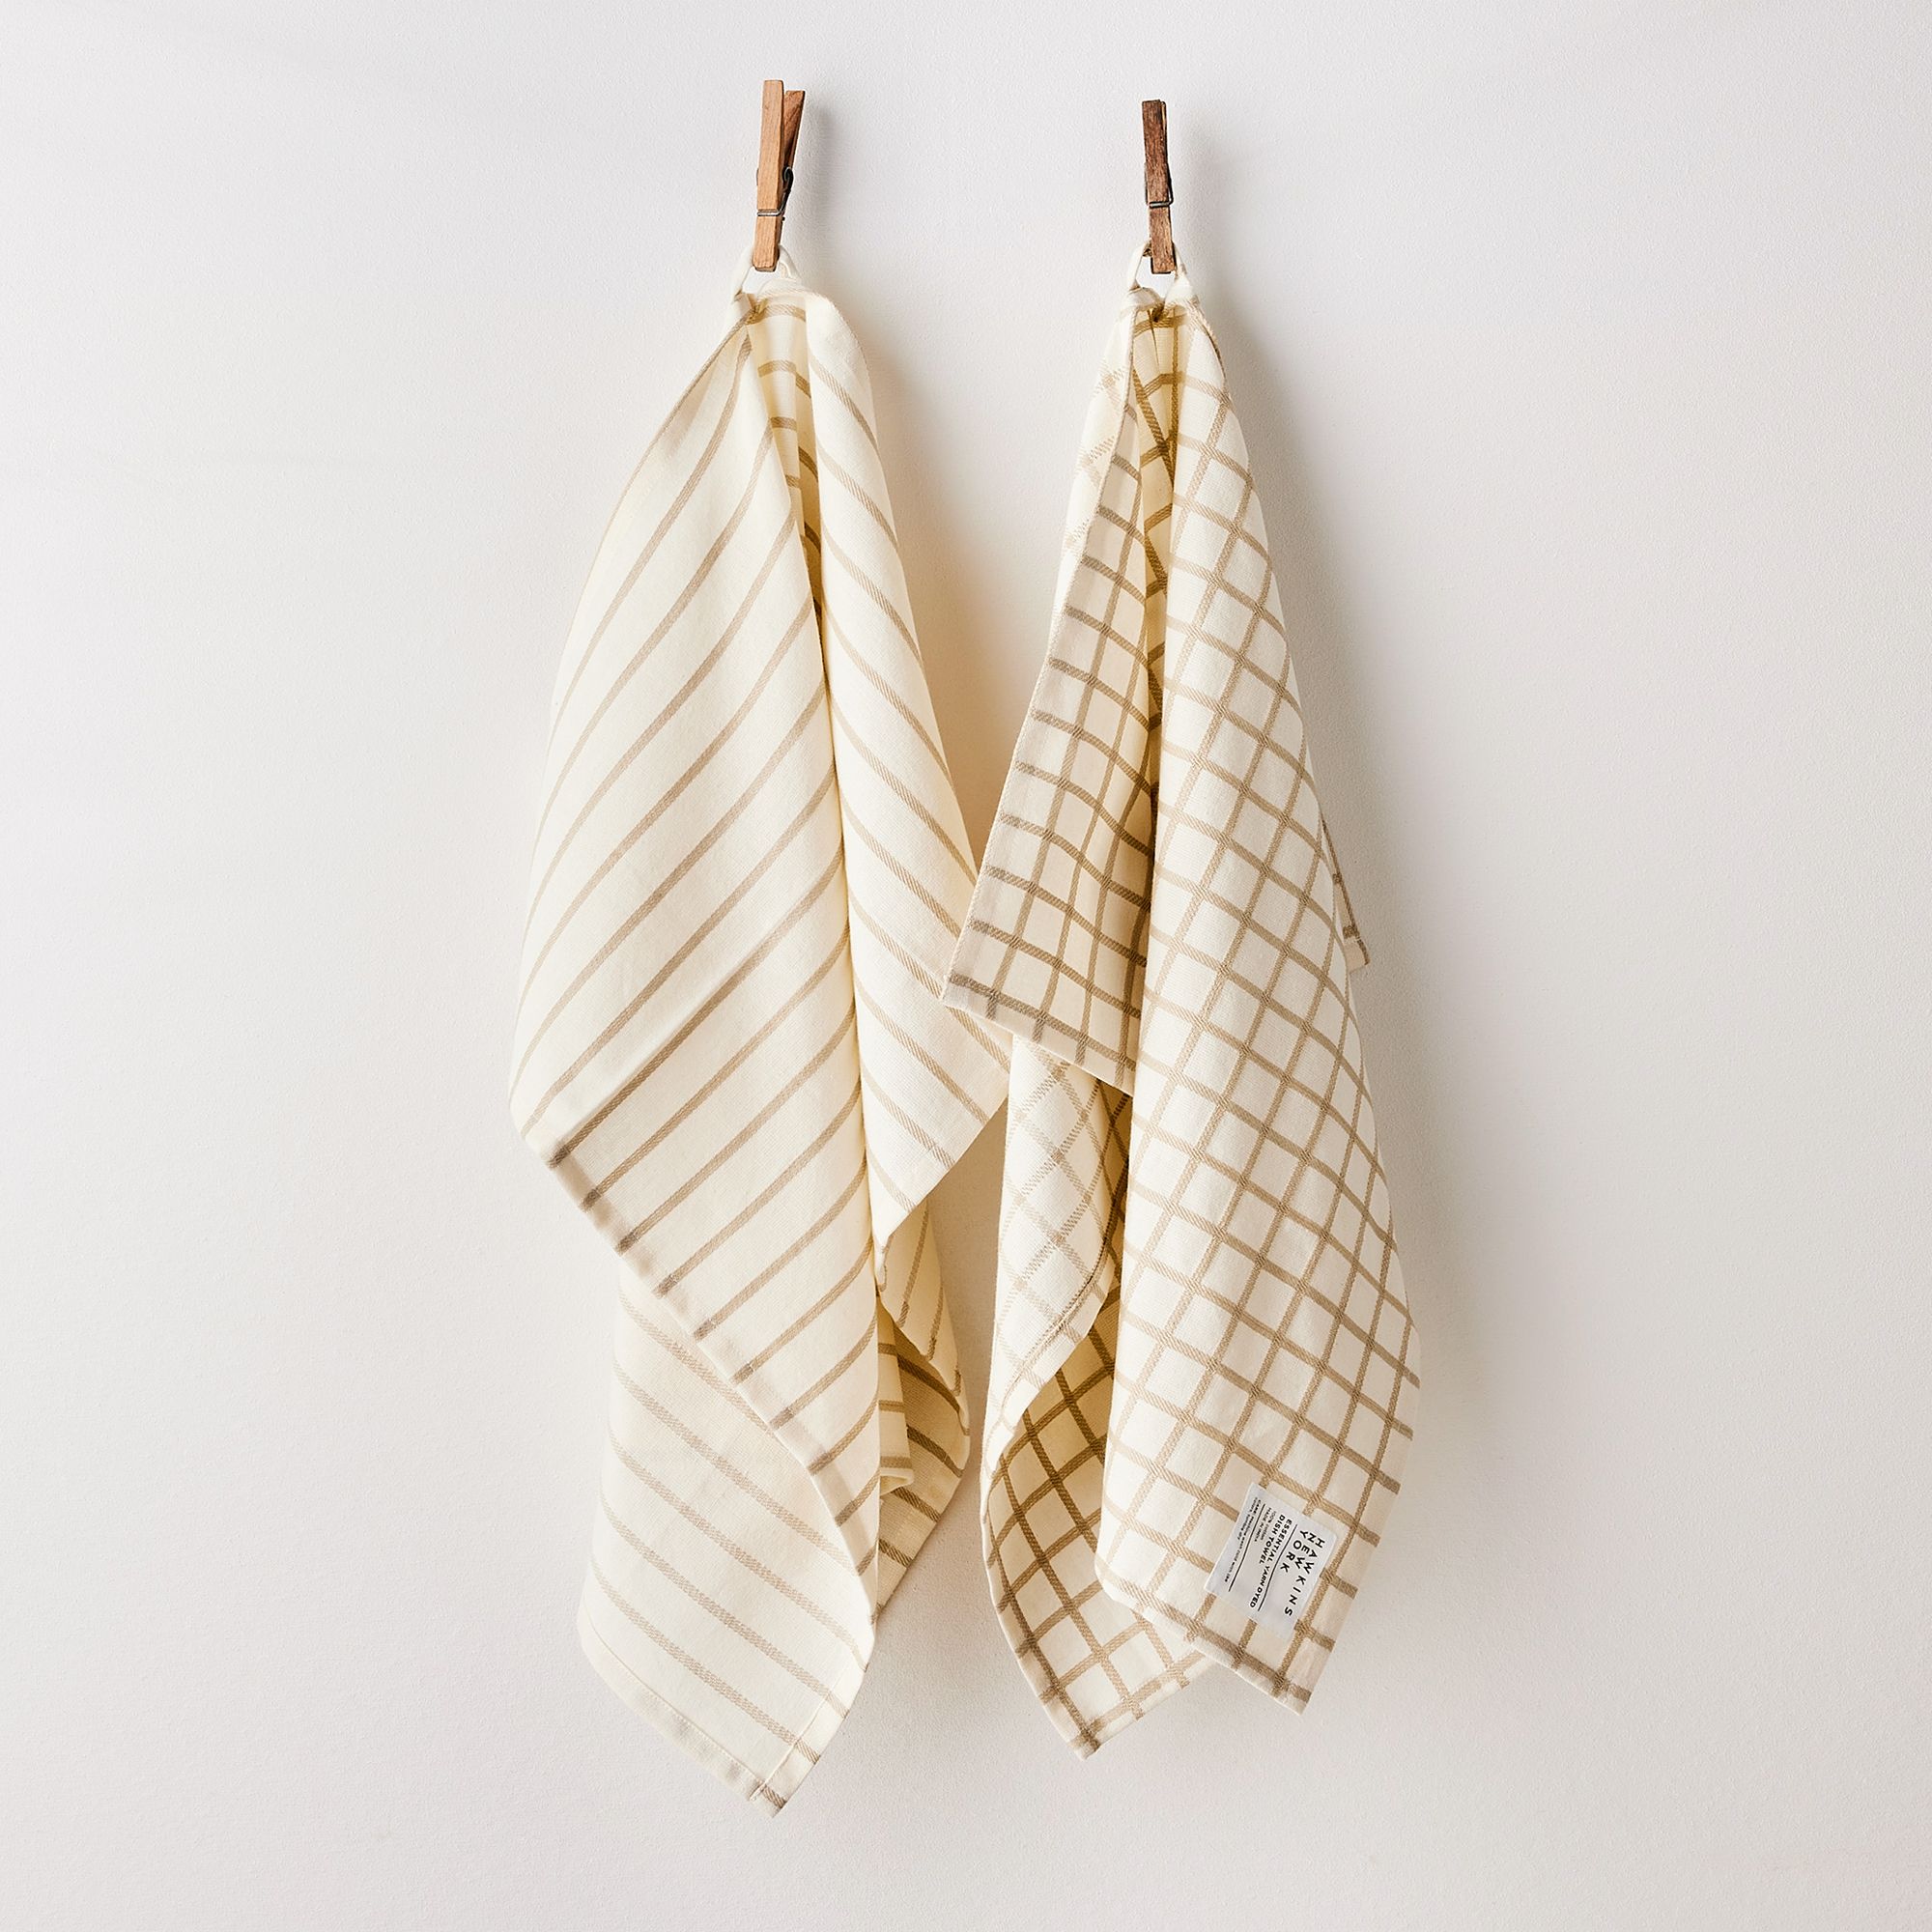 Hawkins New York Simple Wood Paper Towel Holder, Maple on Food52